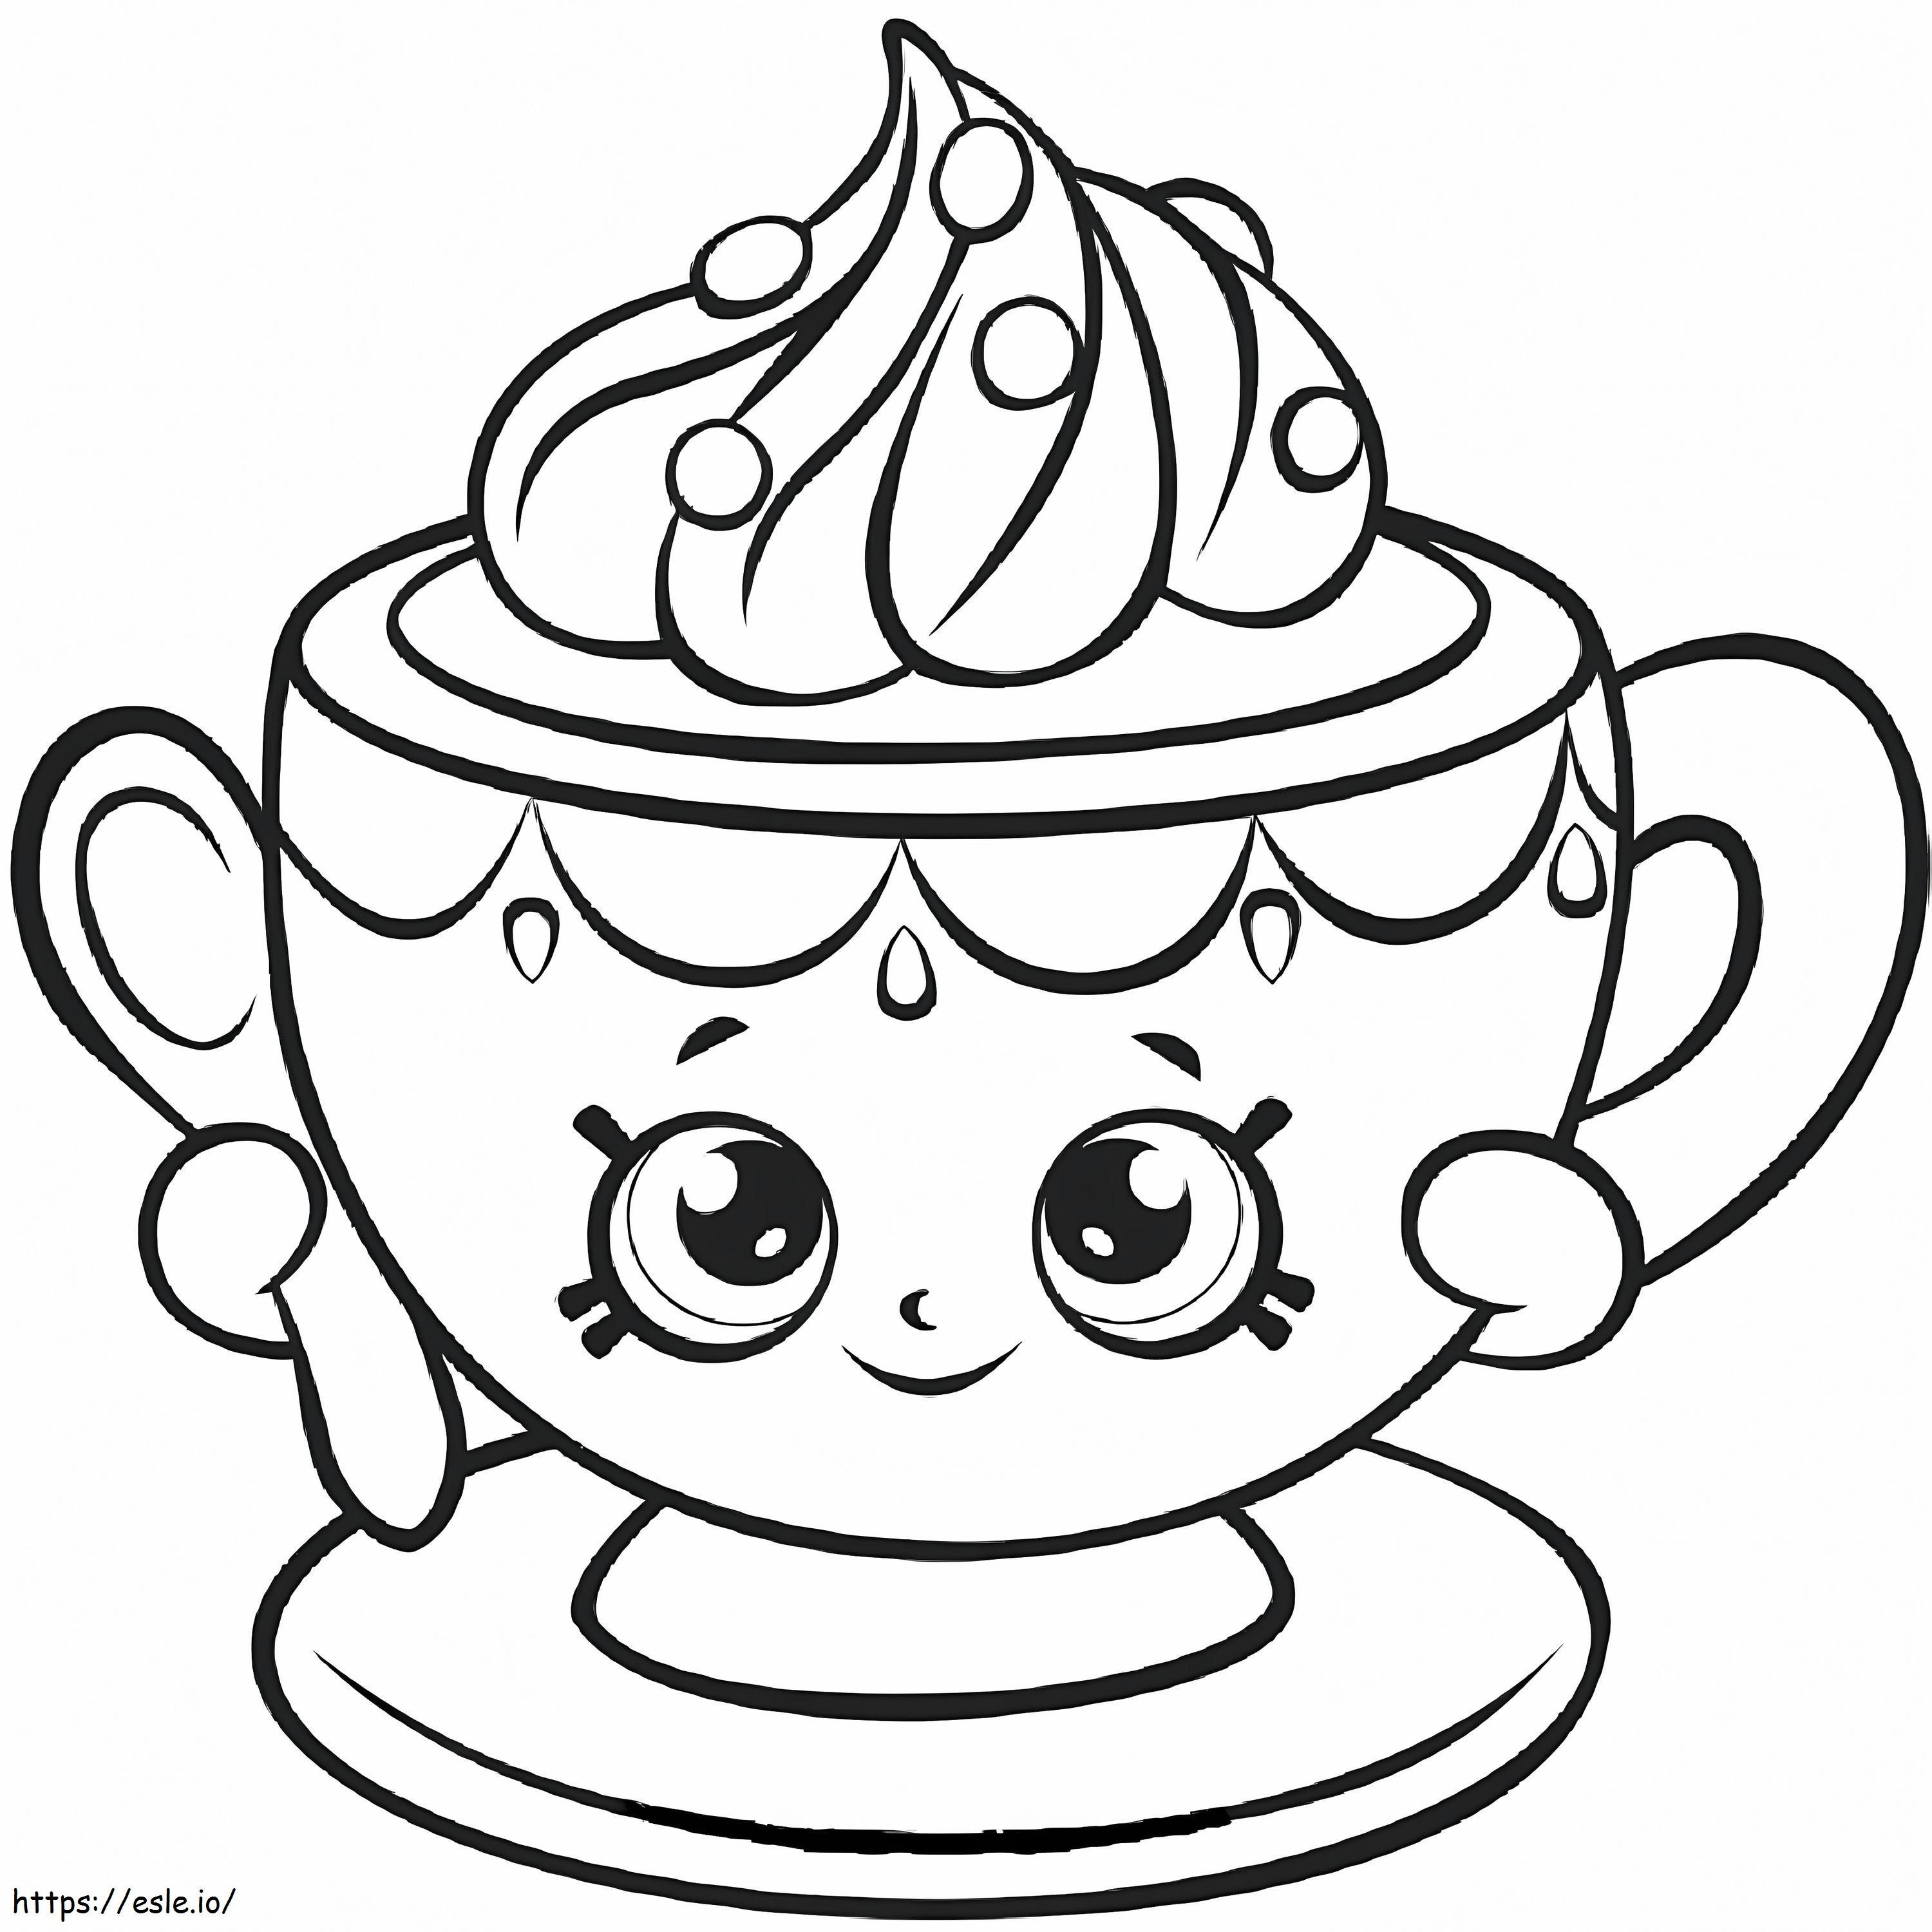 Pequeña taza de té Shopkin para colorear